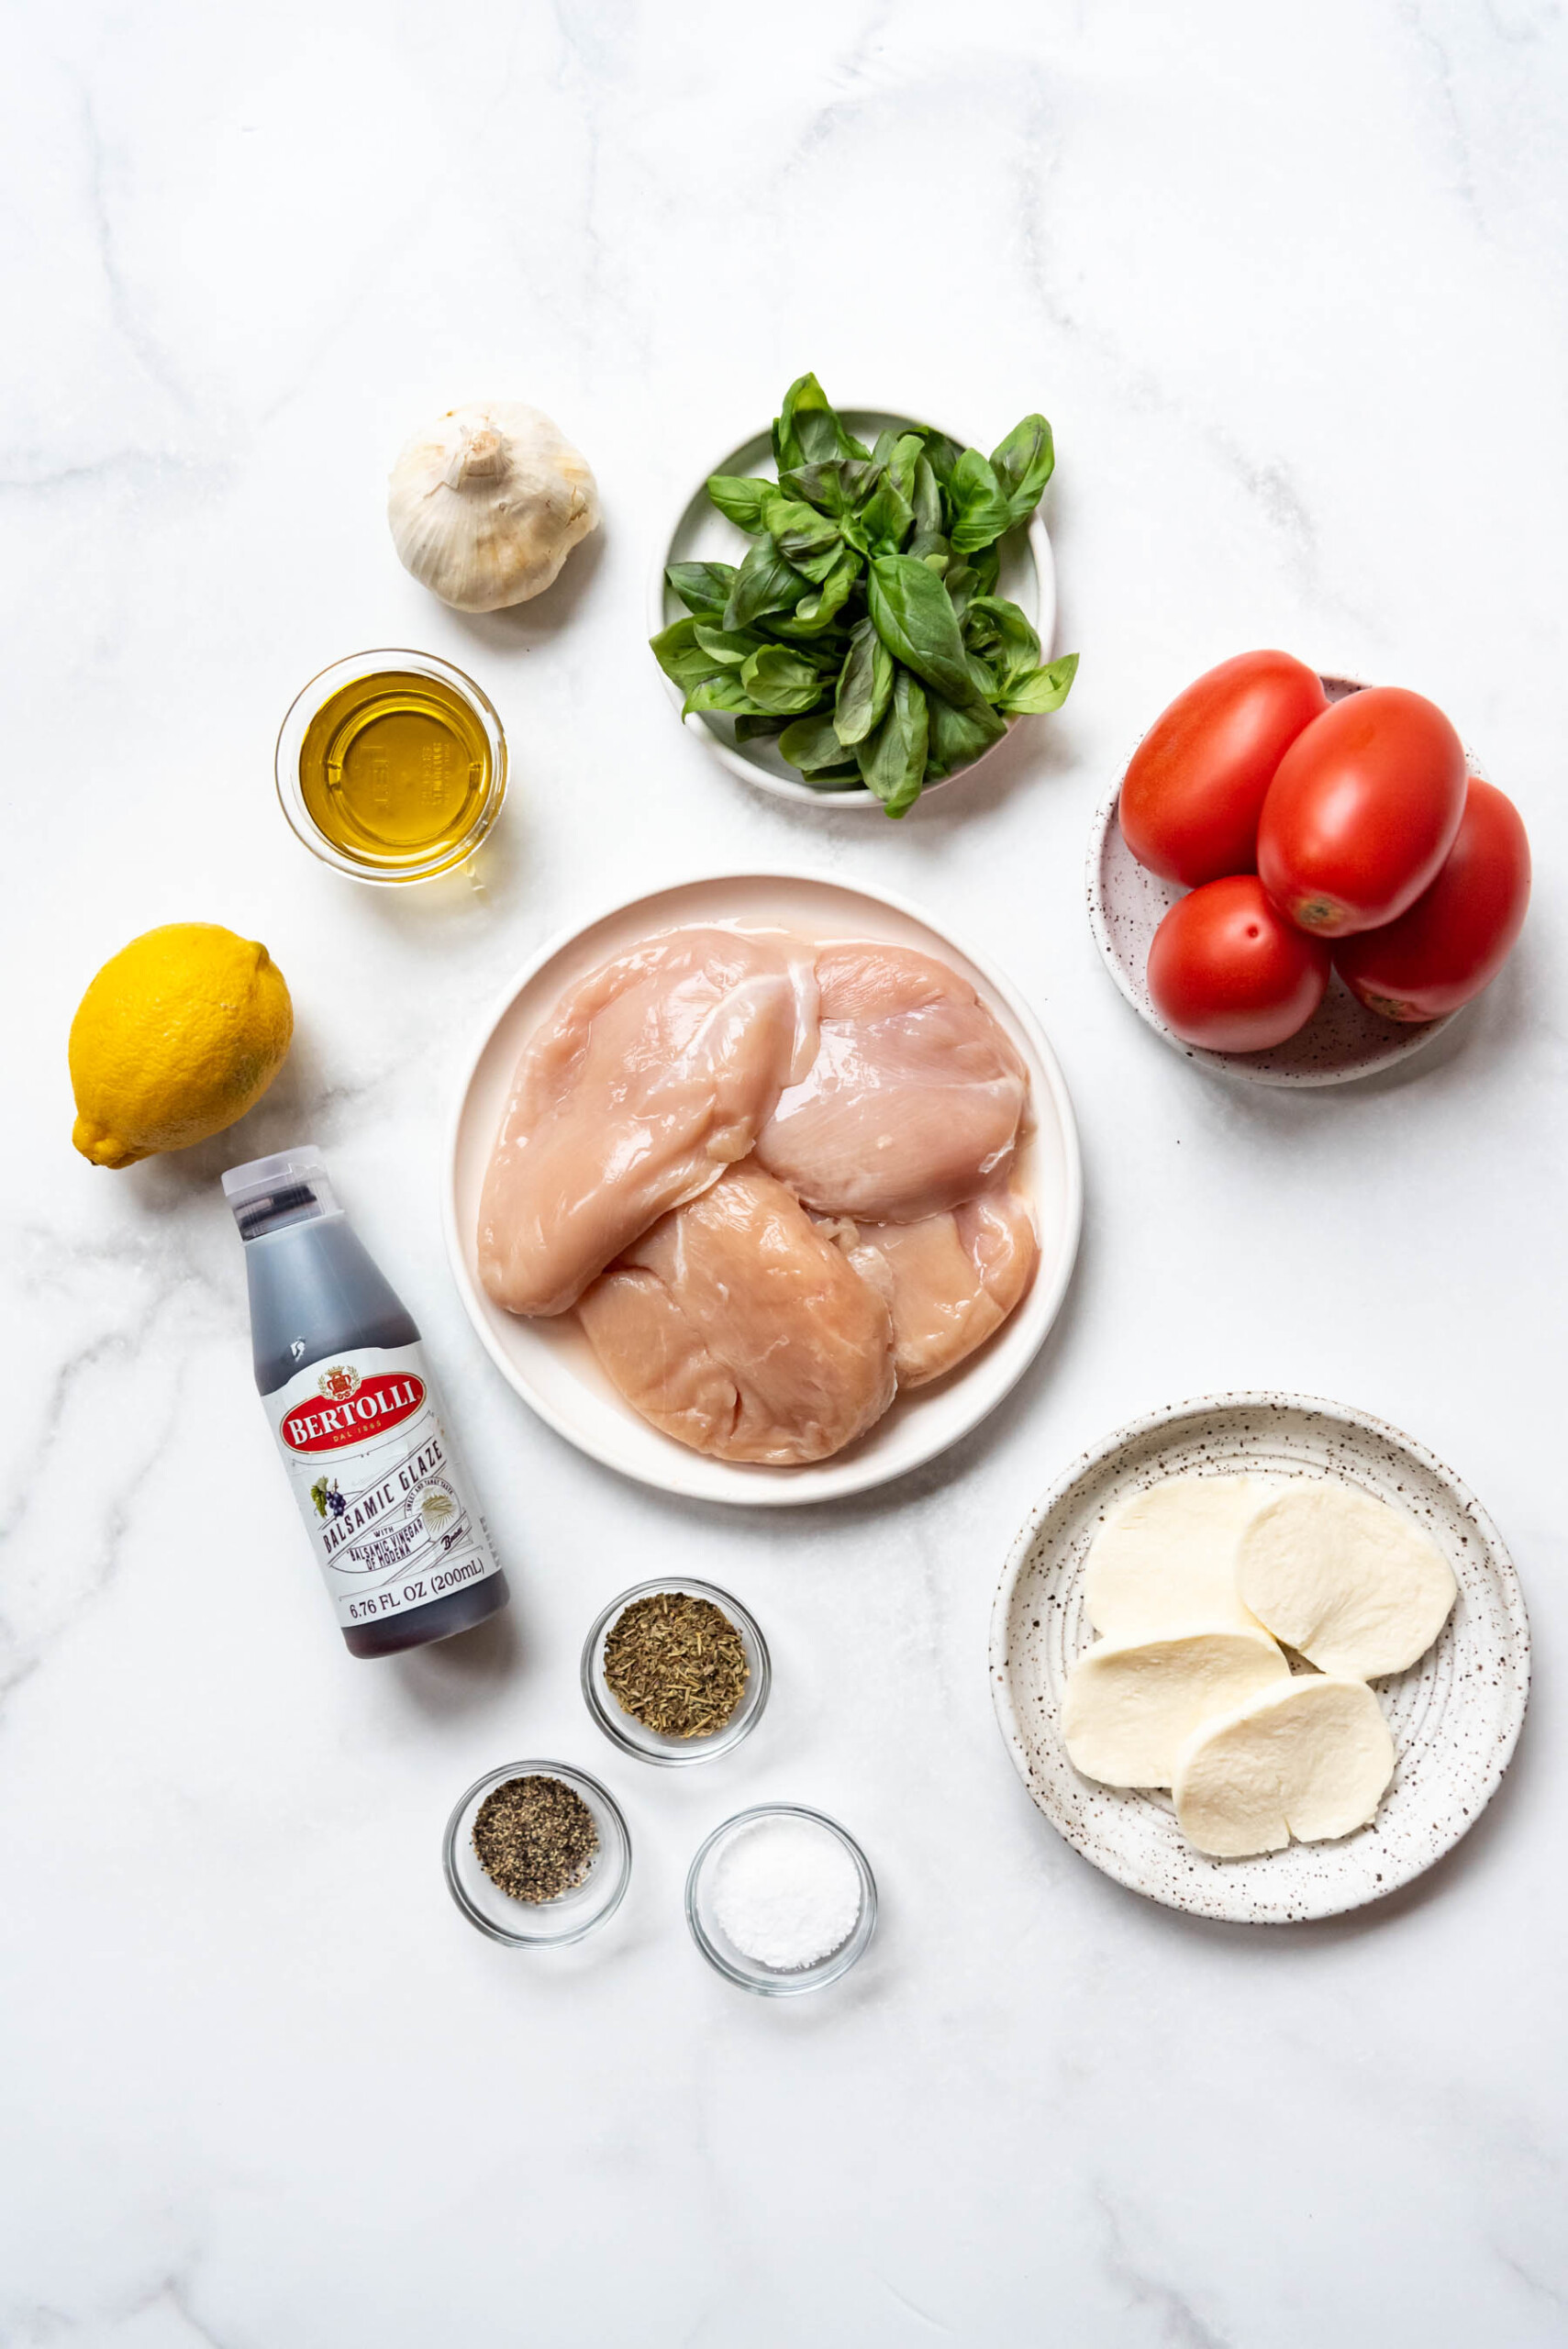 Ingredients for making bruschetta chicken.